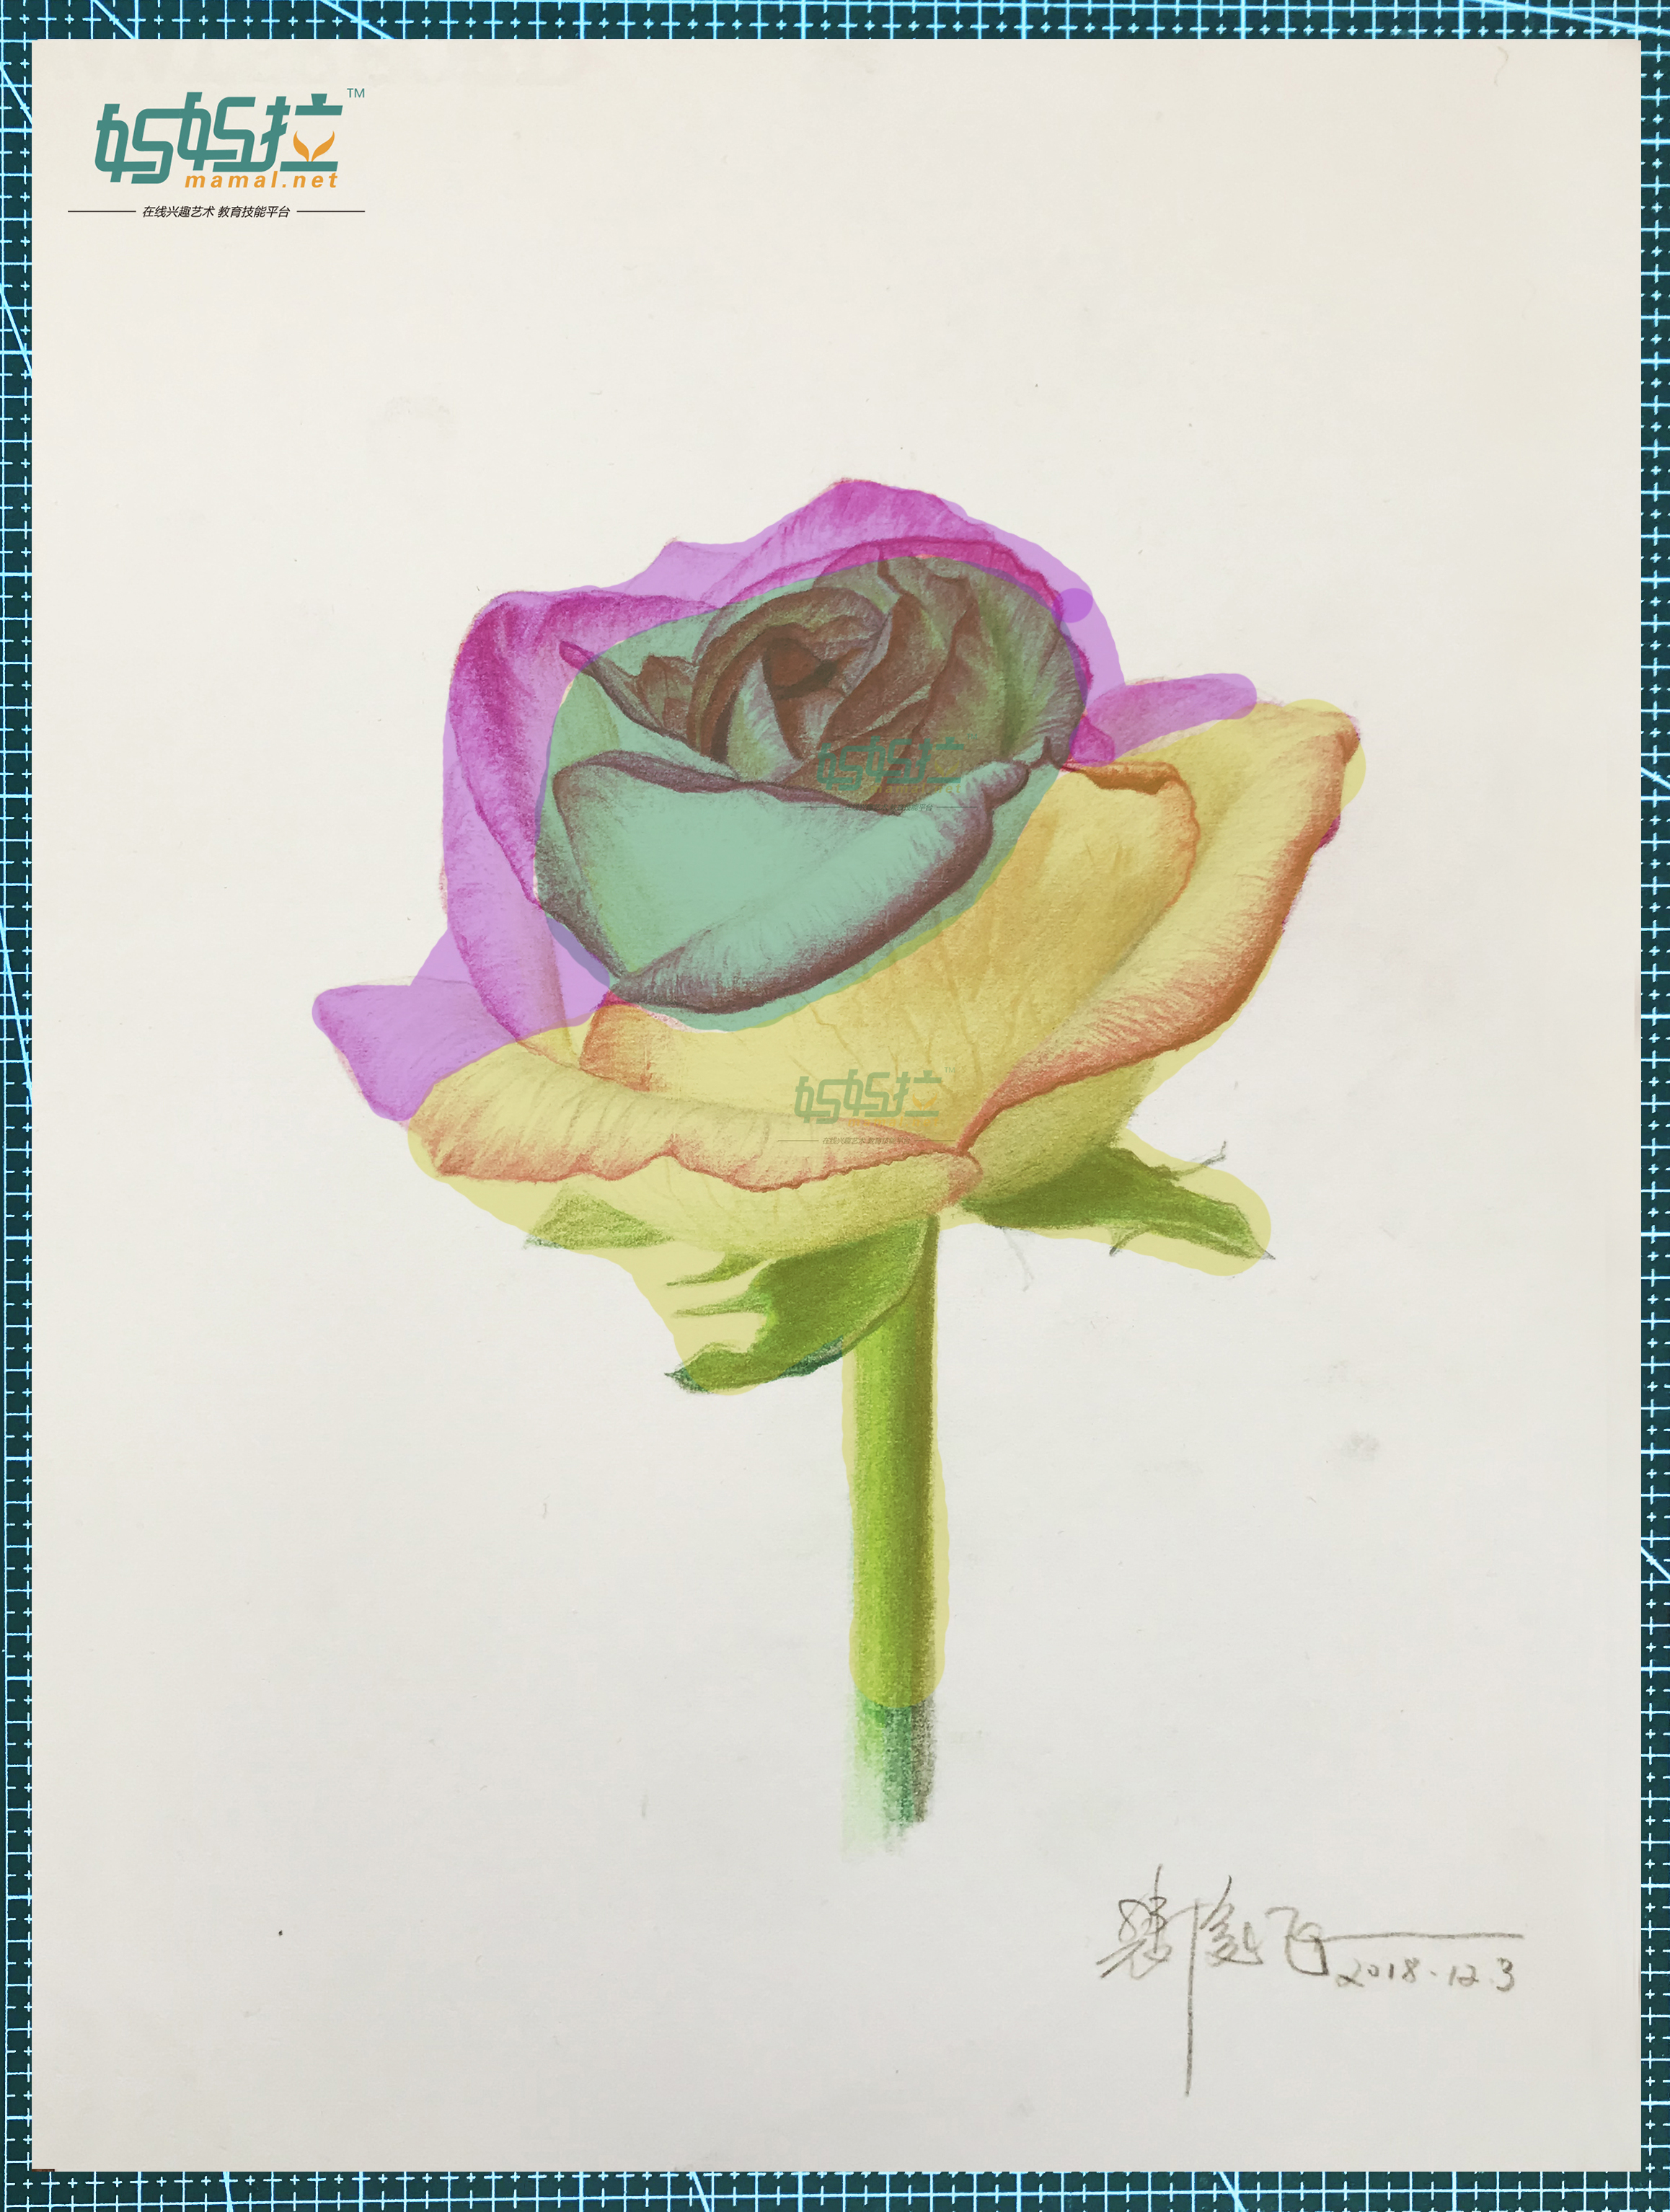 妈妈拉美术中央美院裴俊飞老师分享玫瑰花的素描彩铅的图文详细分析